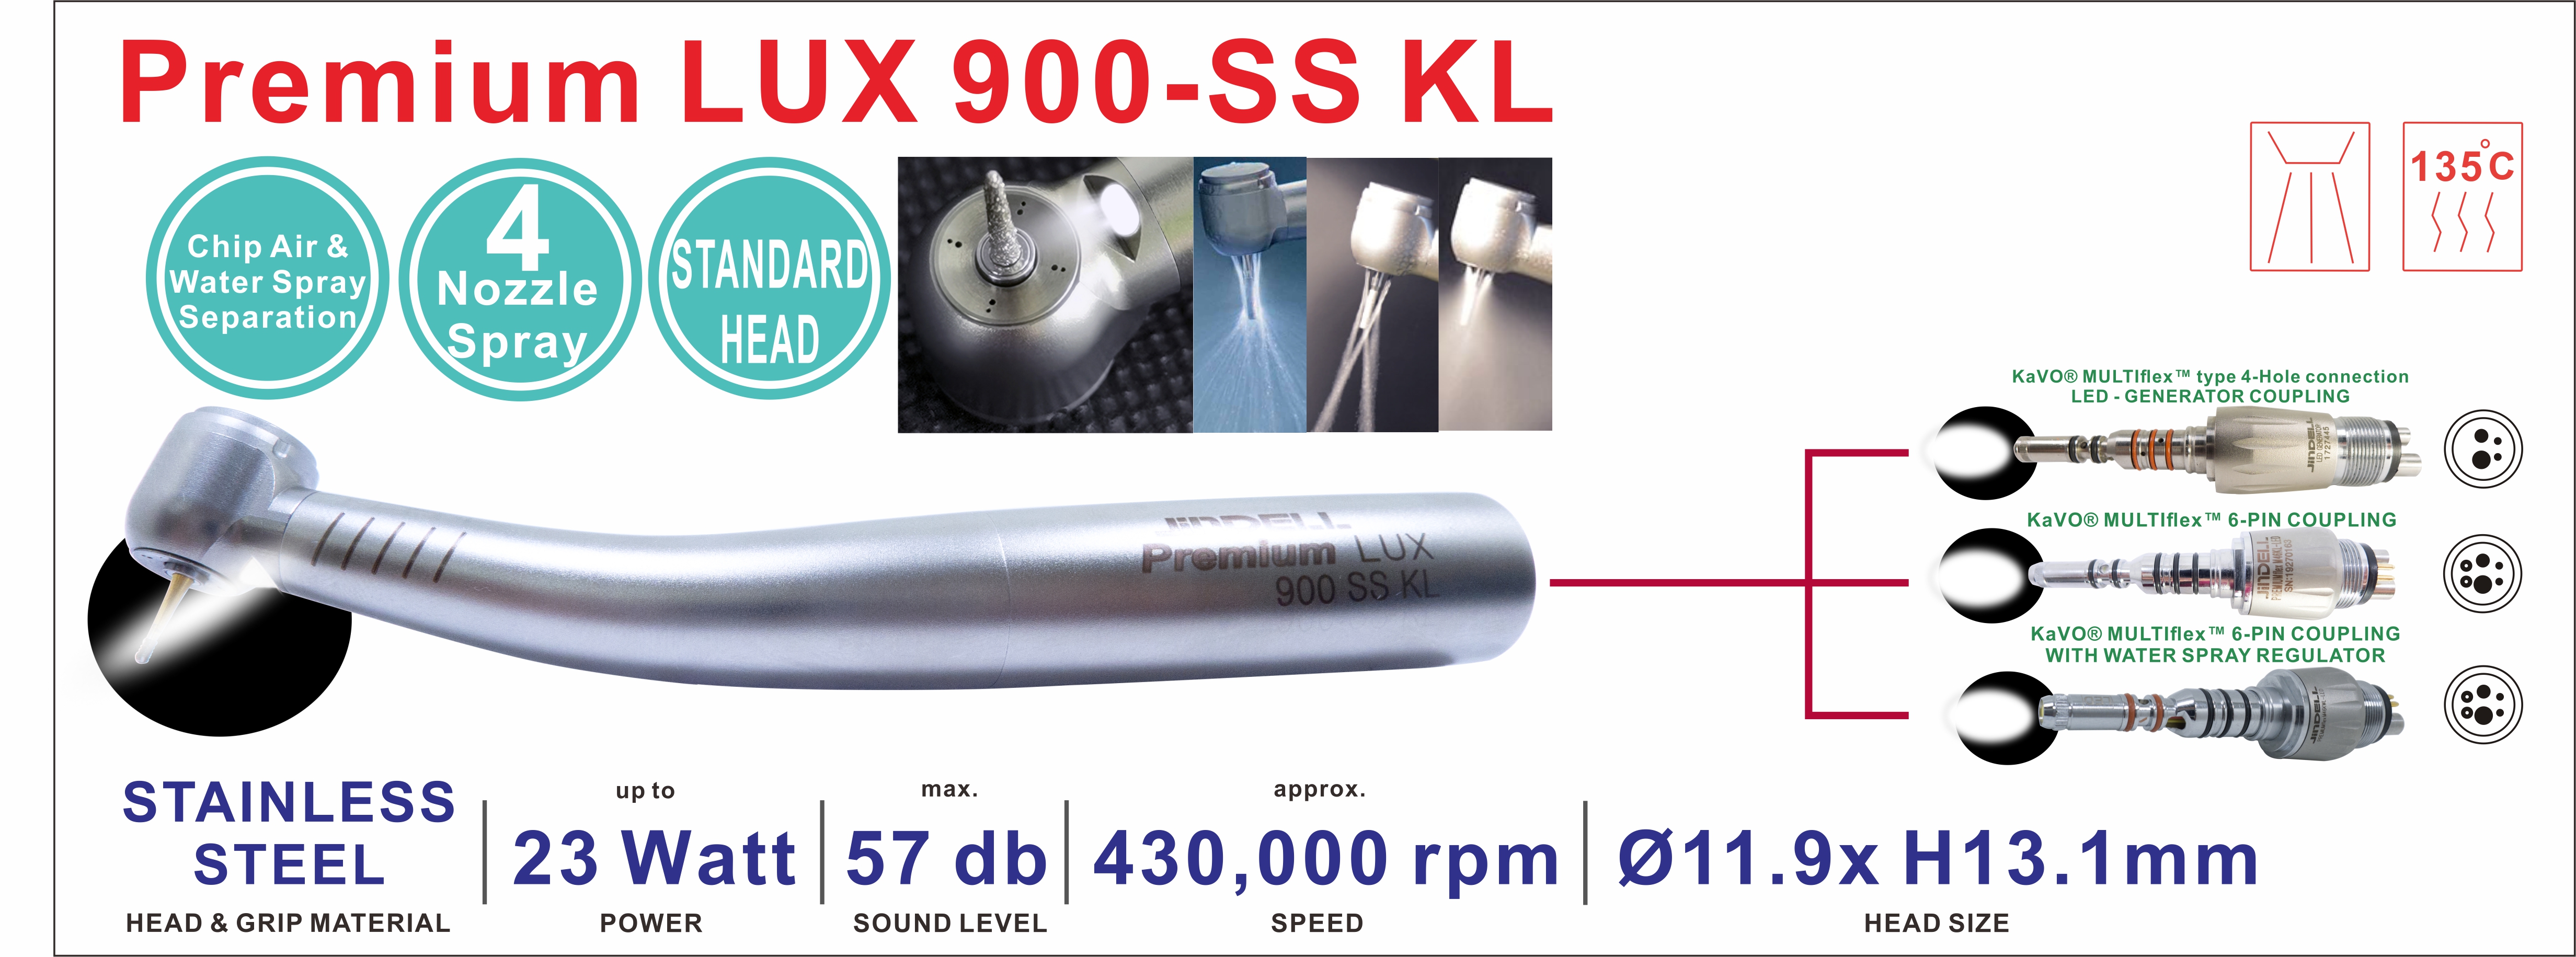 Premium LUX 900-SS KL